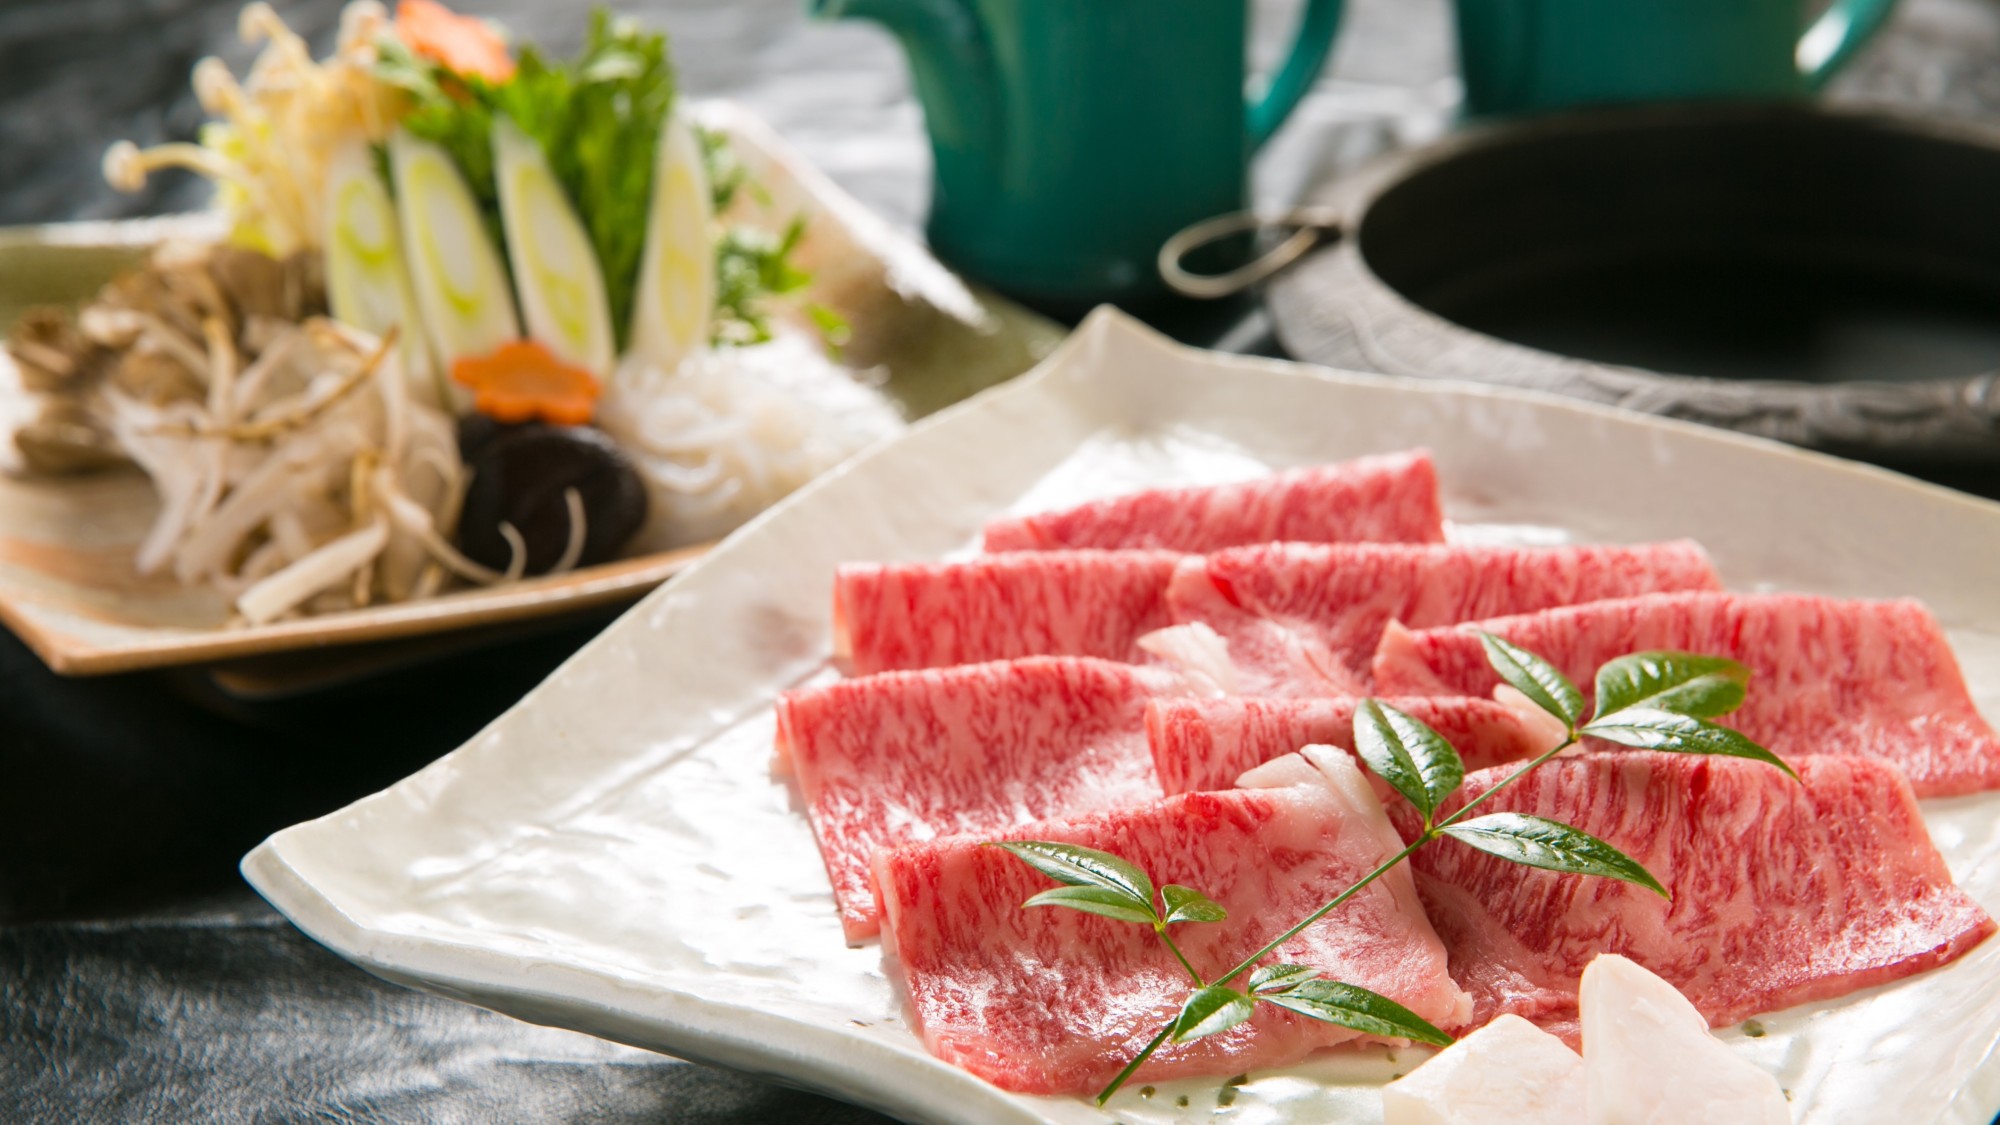 【選べるメイン料理】米沢牛すき焼き例、すみれ特性のタレで甘くとろけるお肉と野菜の味わいをどうぞ